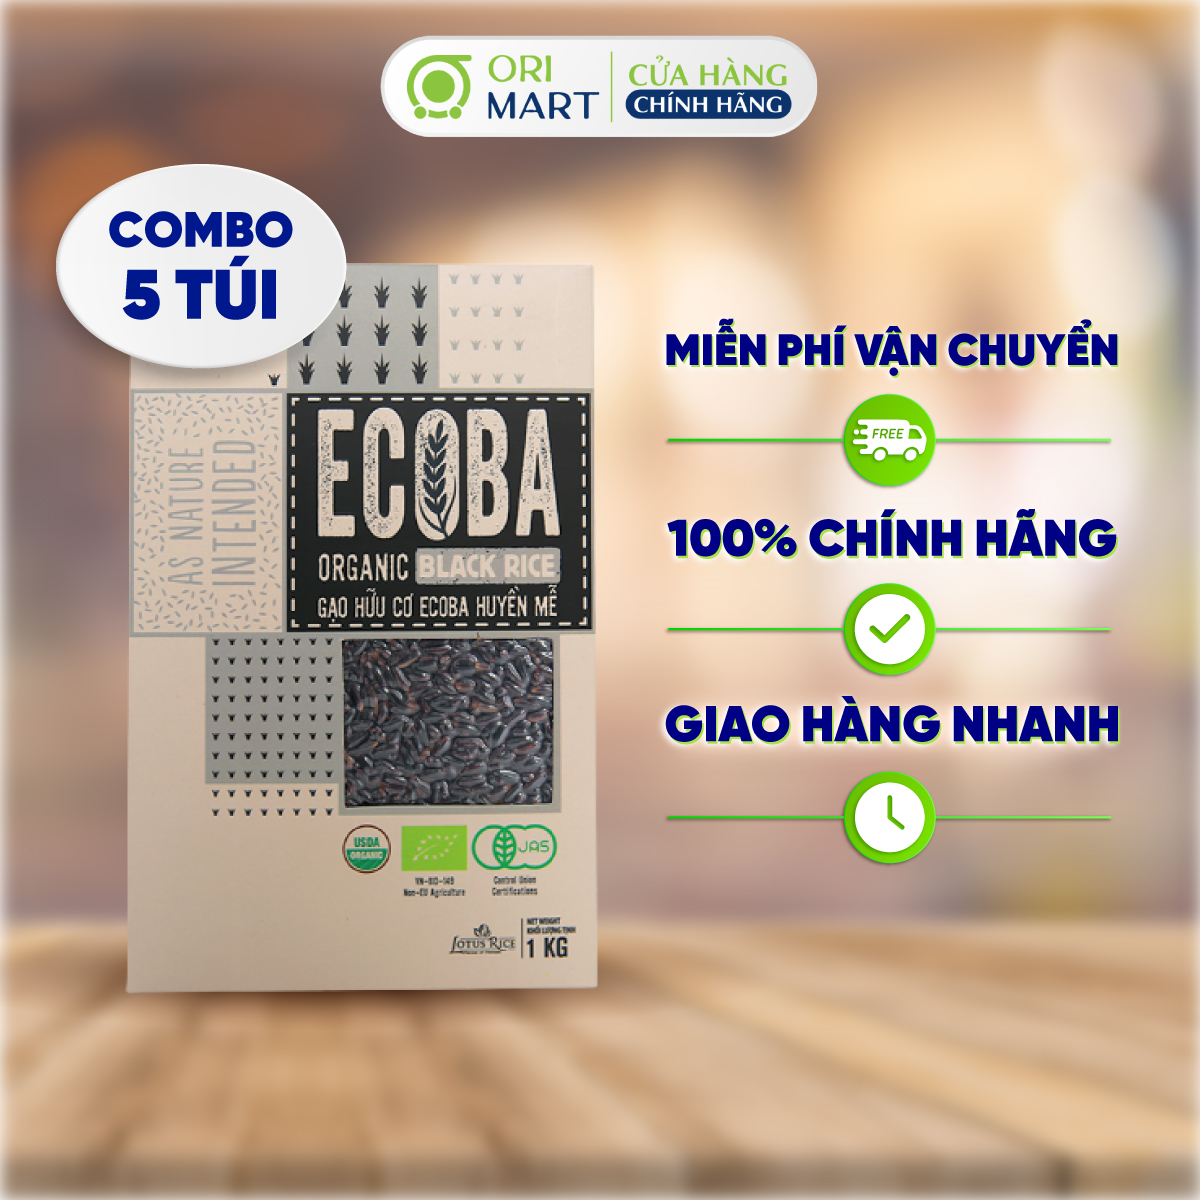 Combo 5 Gạo Lứt Hữu Cơ ECOBA Huyền Mễ Ecoba Organic Black Rice Cao Cấp Thơm Ngon Dẻo Ngọt Hỗ Trợ Giảm Cân Túi 1kg ORIMART